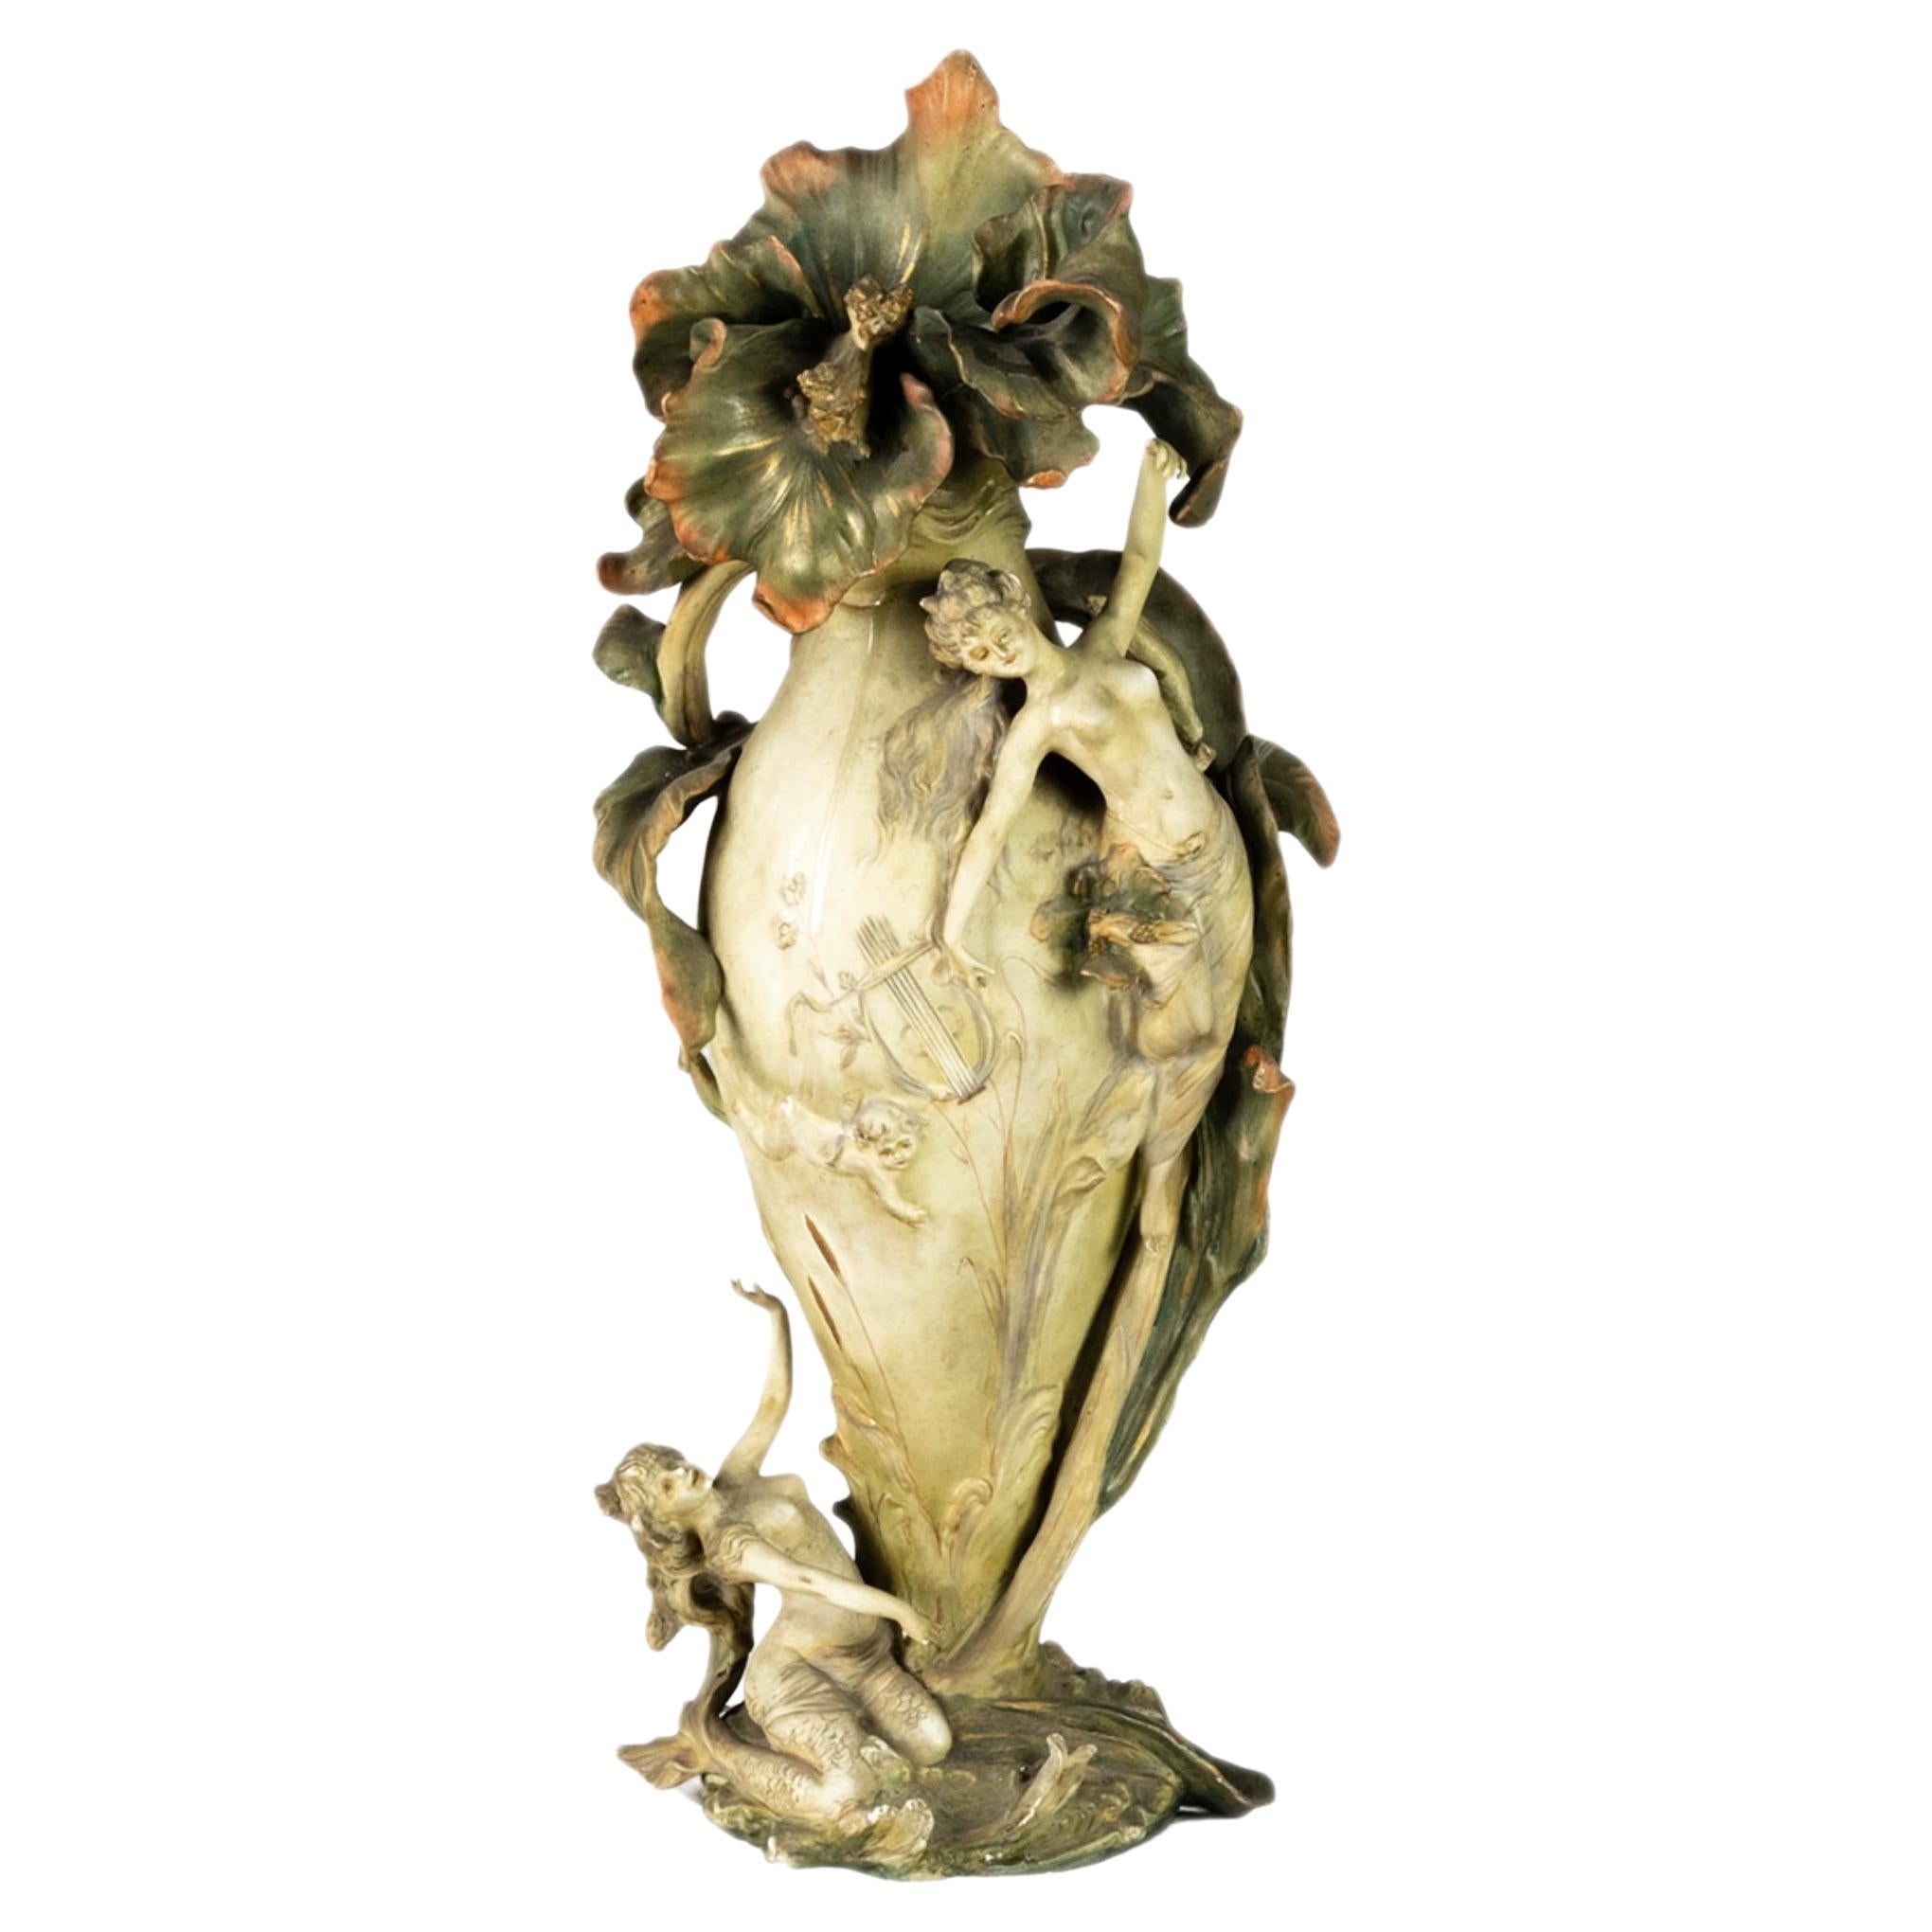 Amphora Art Nouveau figural ceramic vase by Karl Ens Volkstedt